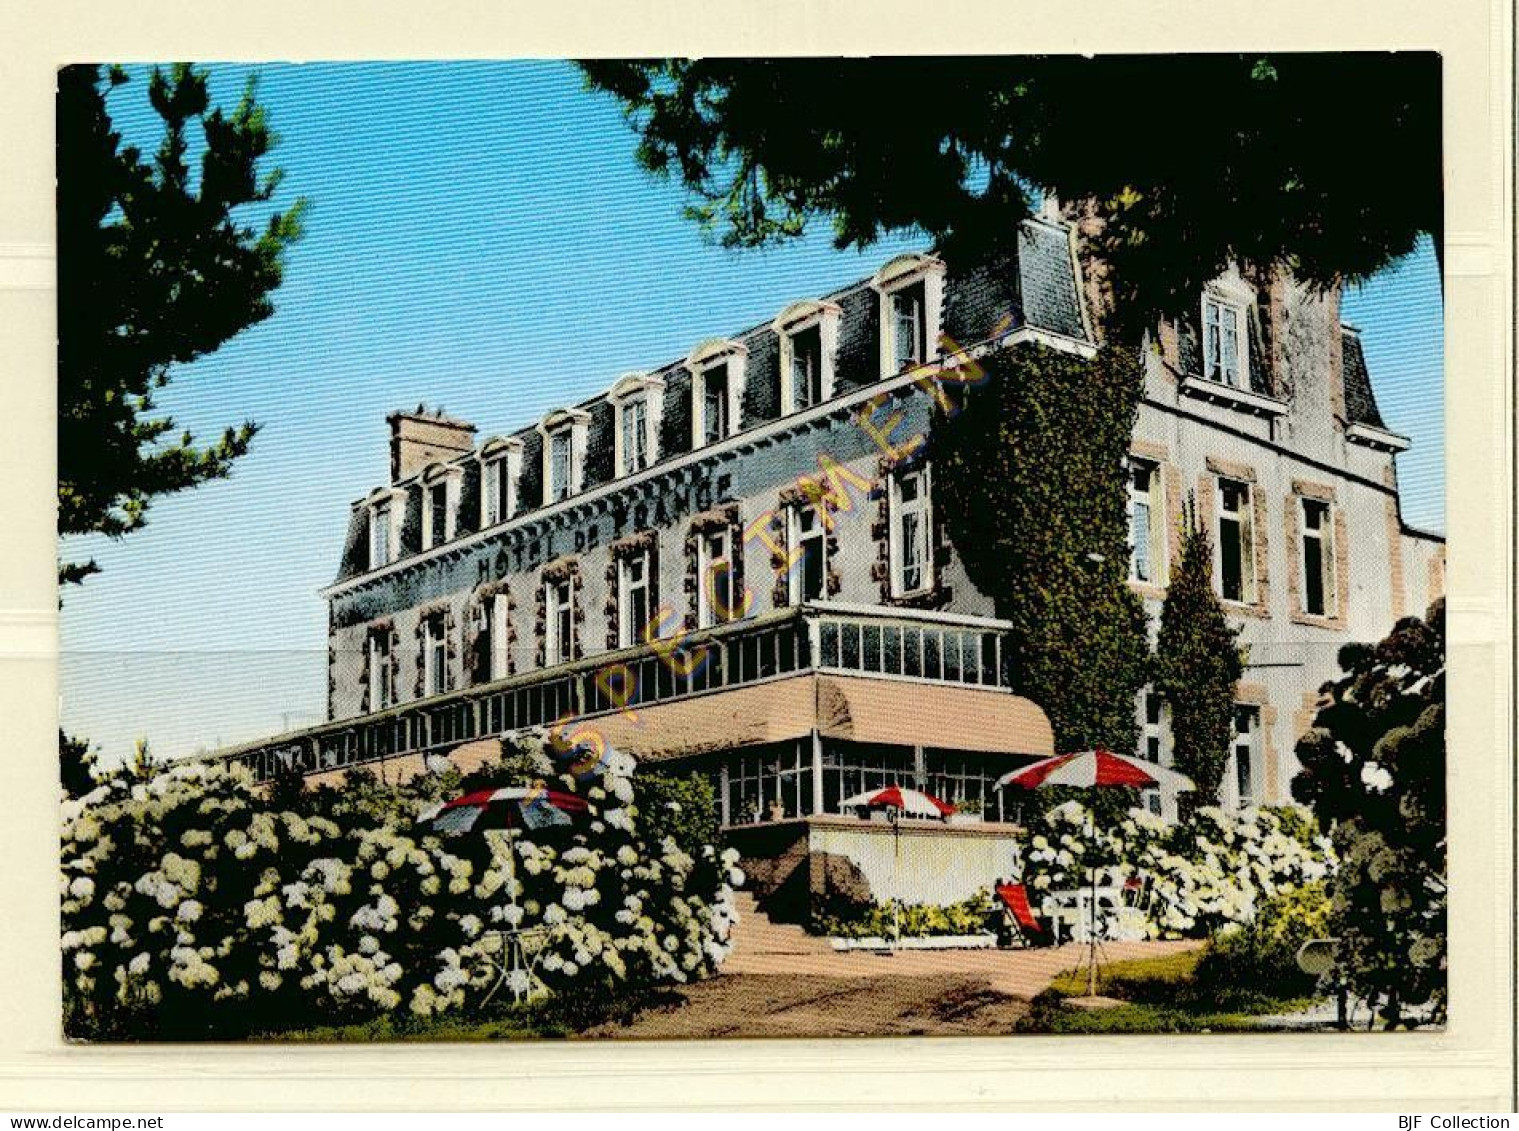 22. PERROS-GUIREC - HOTEL DE FRANCE - Façade Sur Mer (voir Scan Recto/verso) - Perros-Guirec